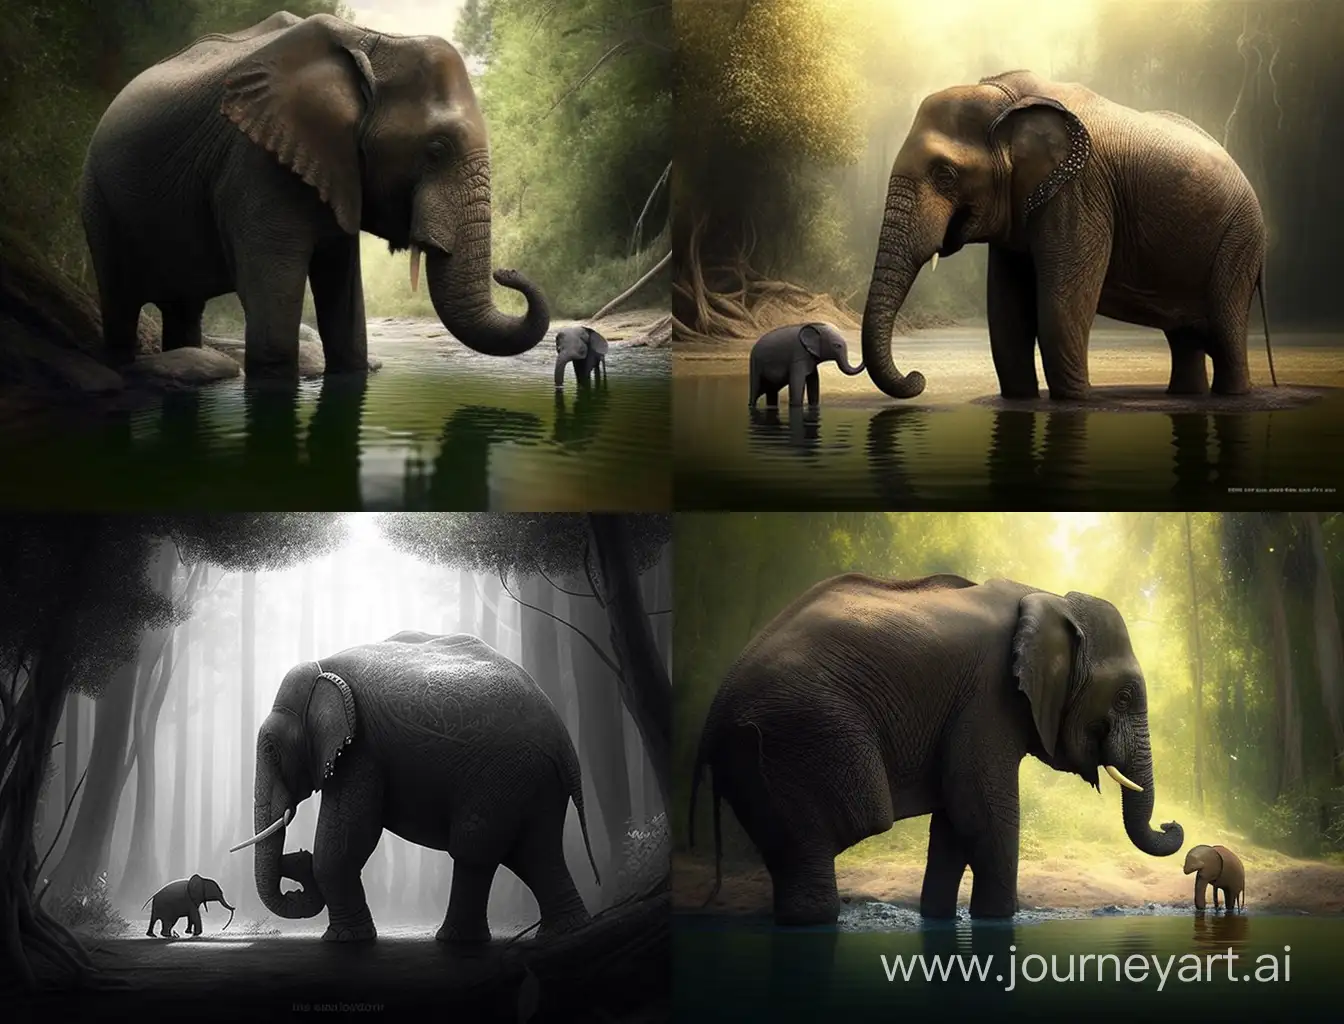 عنوان القصة: الفيل و السلحفاة قصة عن العمل الجاد و المثابرة فى قديم الزمان،  كان هناك فيل كبير و ضخم يتباهى أمام الحيوانات الأخرى وفى يوم من الأيام،  كان الفيل يمشى فى الغابة عندما رأى سلحفاة صغيرة. 